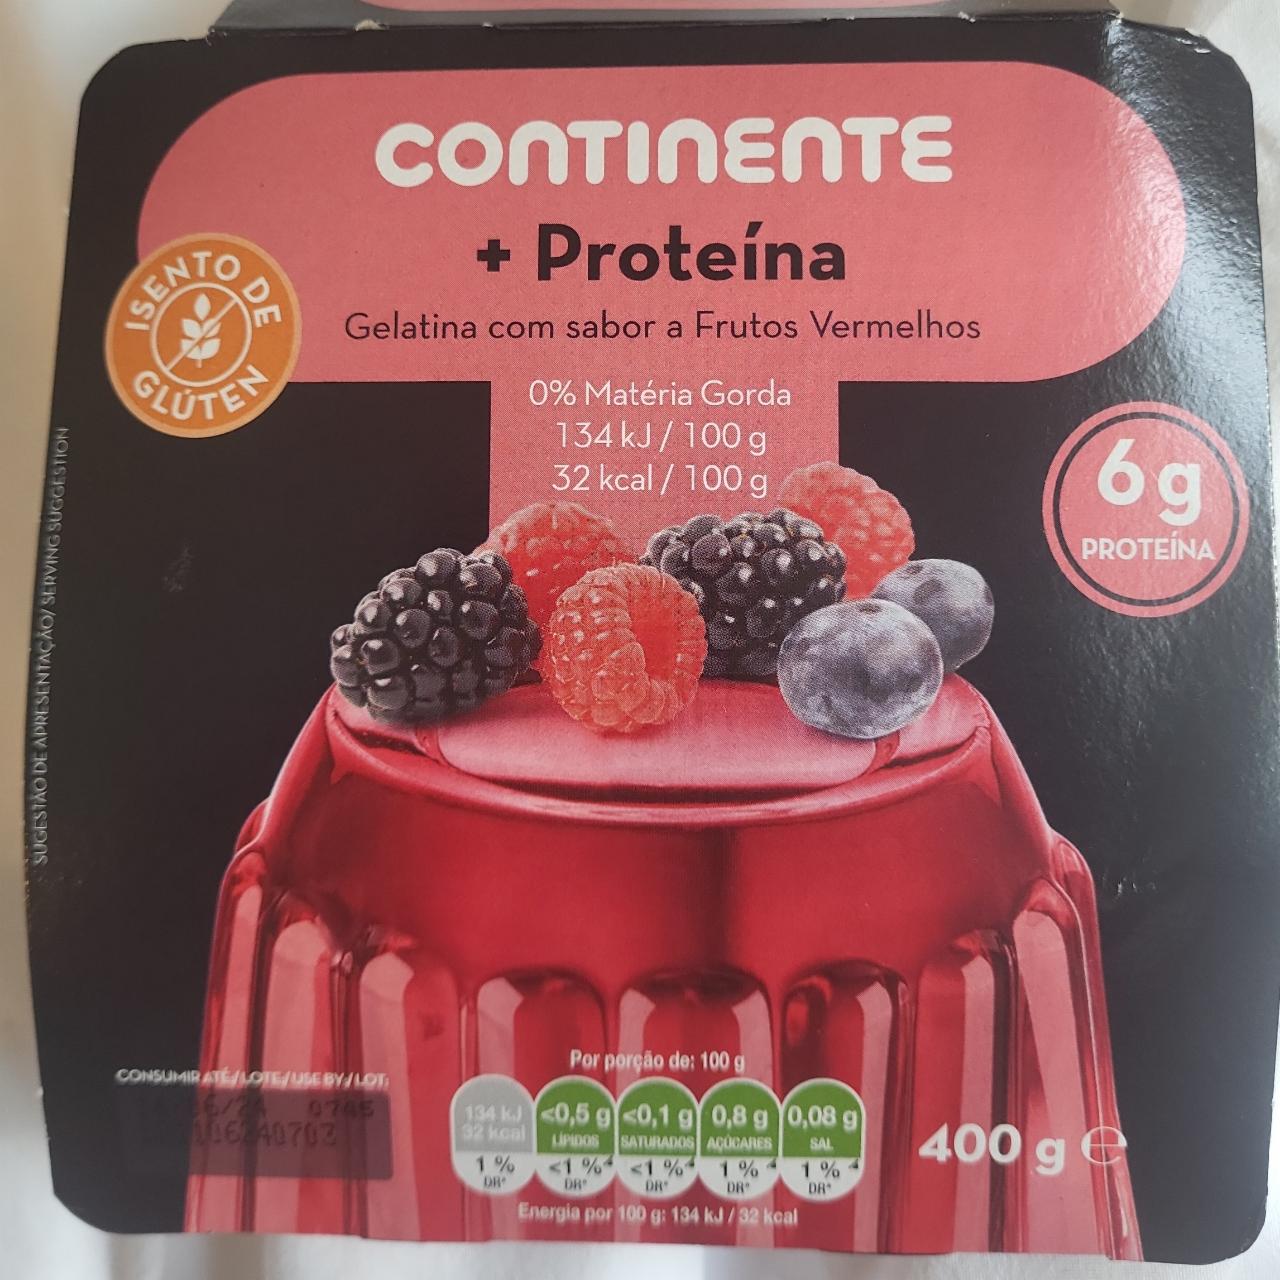 Fotografie - +Proteína Gelatina som sabor a Frutos Vermelhos Continente